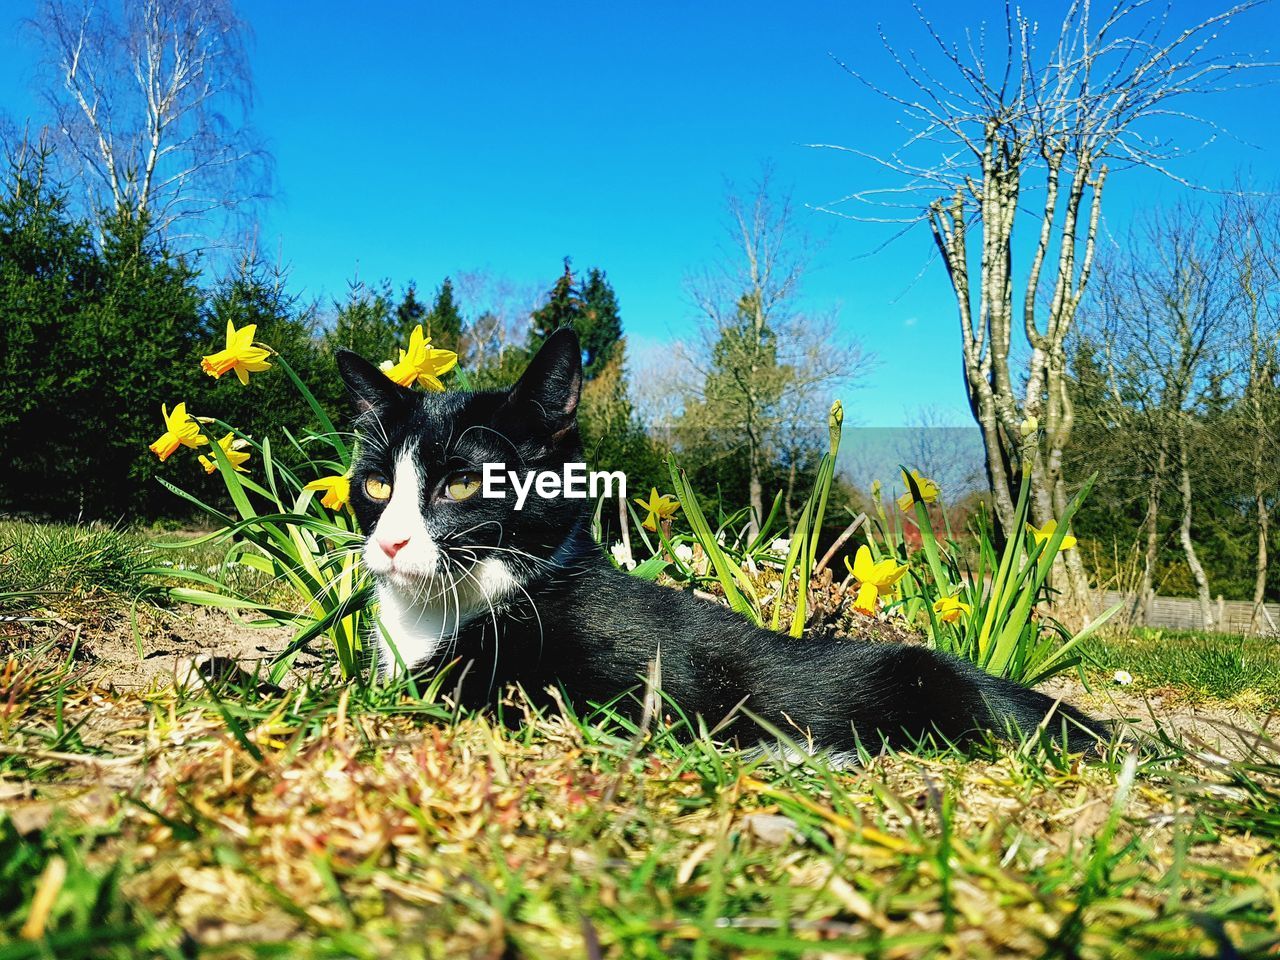 CAT LYING ON A FIELD